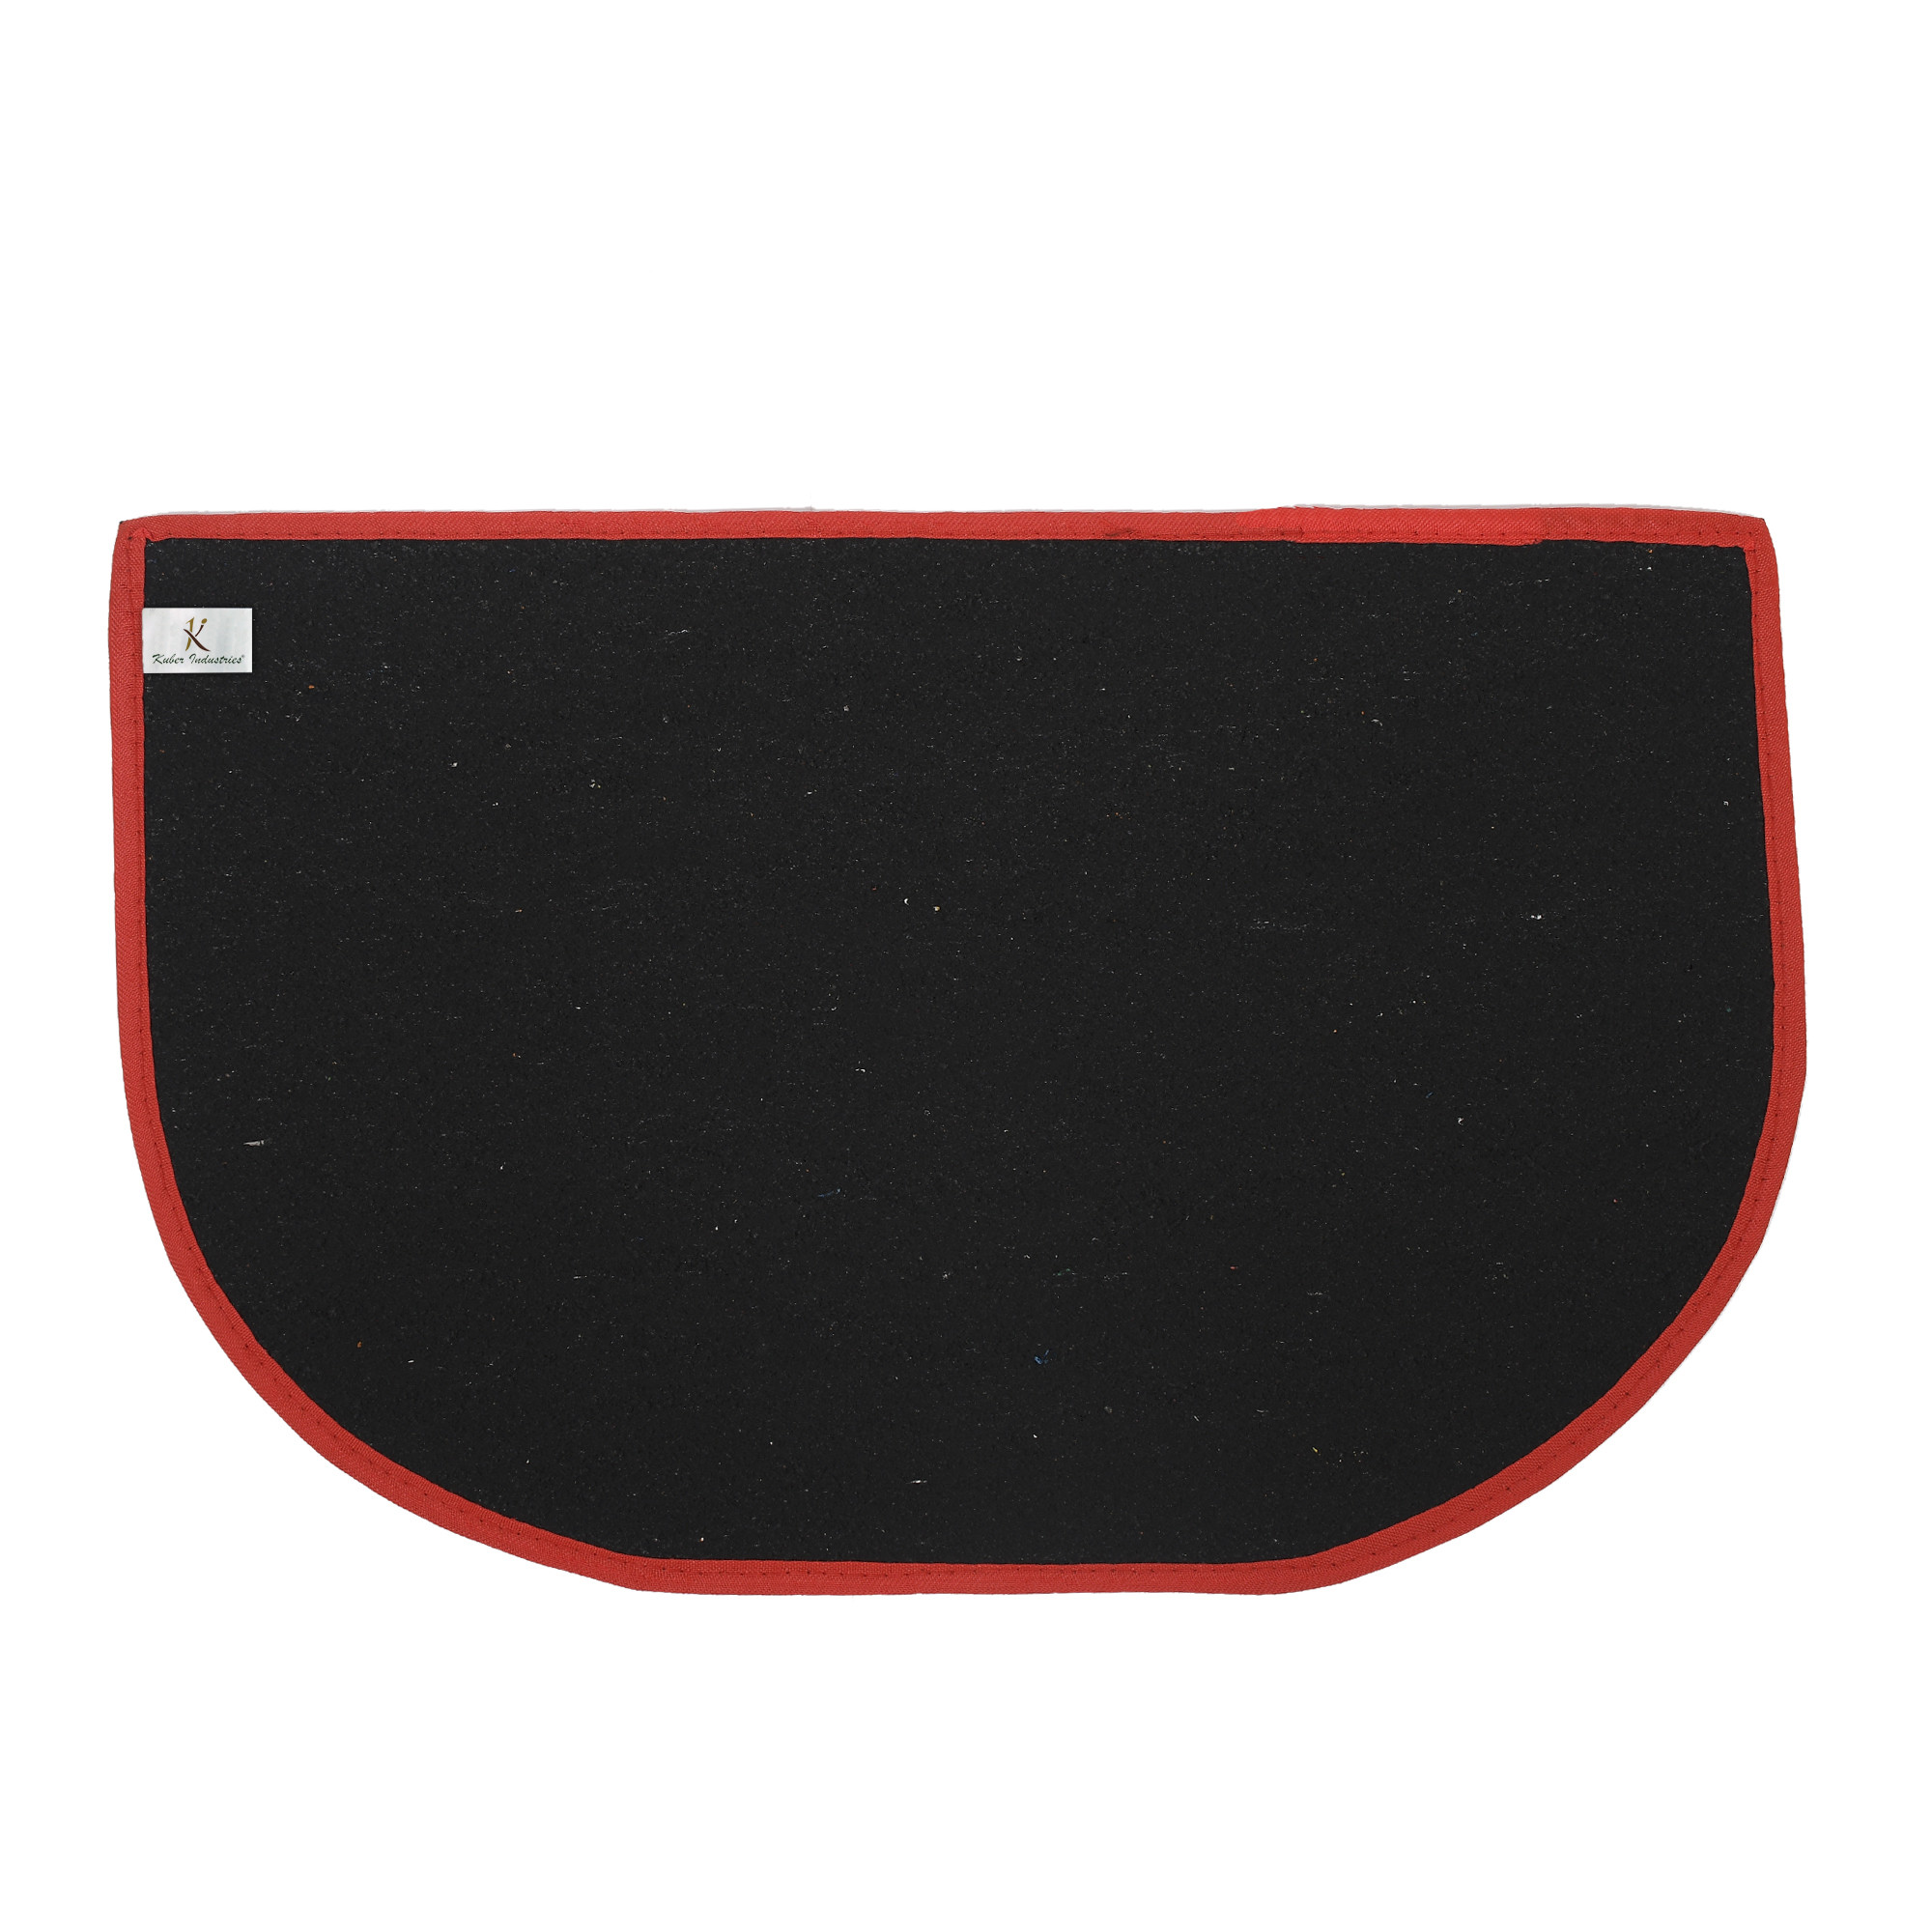 Kuber Industries D-Shape Microfiber Anti Slip 2 Pieces Door Mat (14'' x 23'',Red & Maroon)-KUBMRT12184